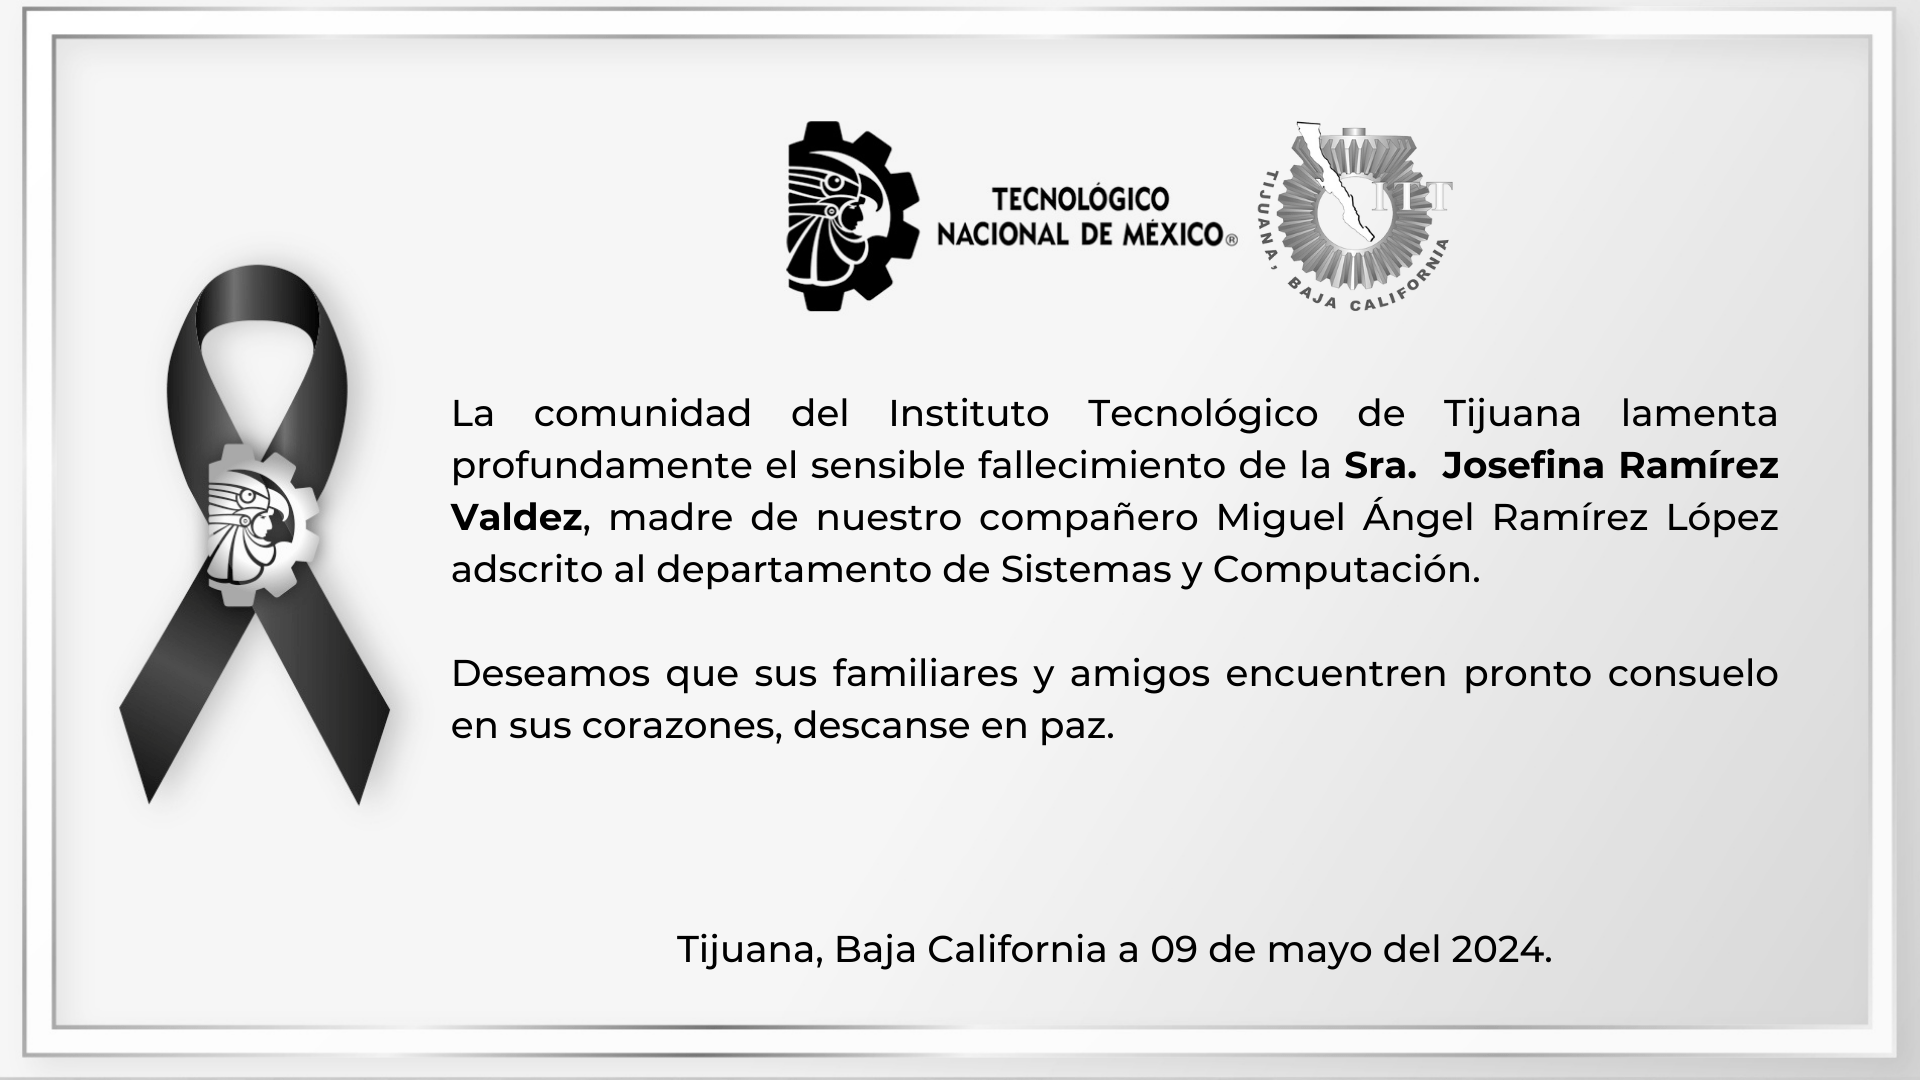 La comunidad del Instituto Tecnológico de Tijuana lamenta profundamente el sensible fallecimiento de la Sra. Josefina Ramírez Valdez